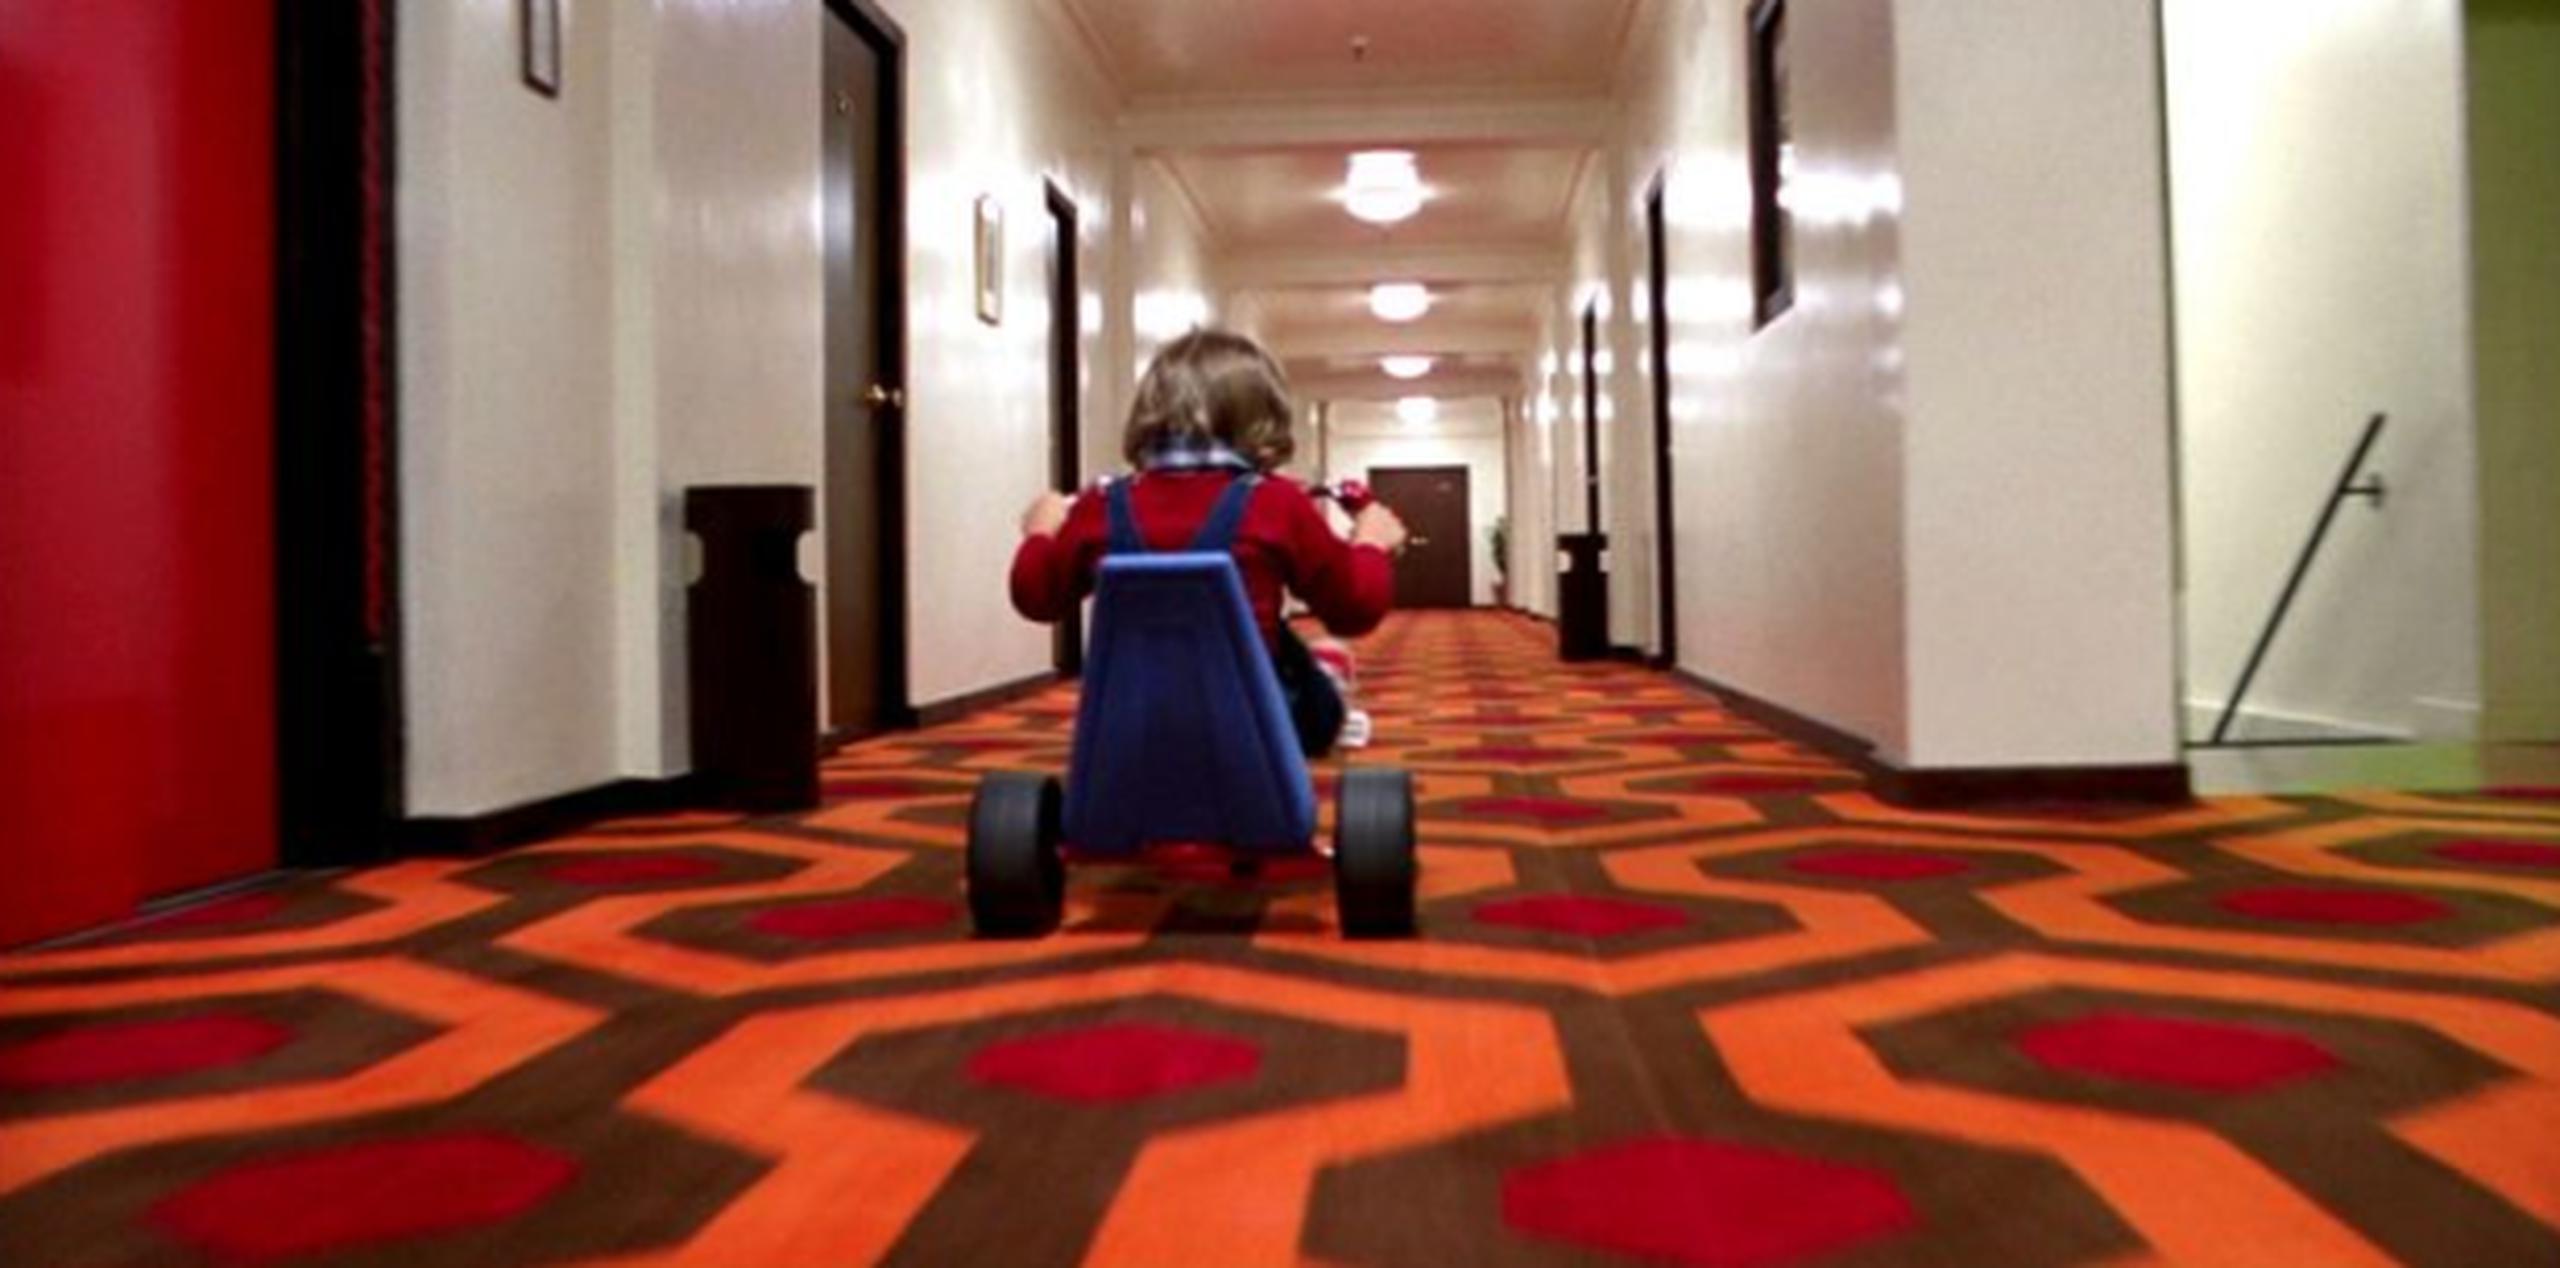 Tras el estreno de la adaptación cinematográfica de "The Shining", dirigida por Stanley Kubrick y protagonizada por Jack Nicholson, el hotel adquirió fama de estar embrujado.